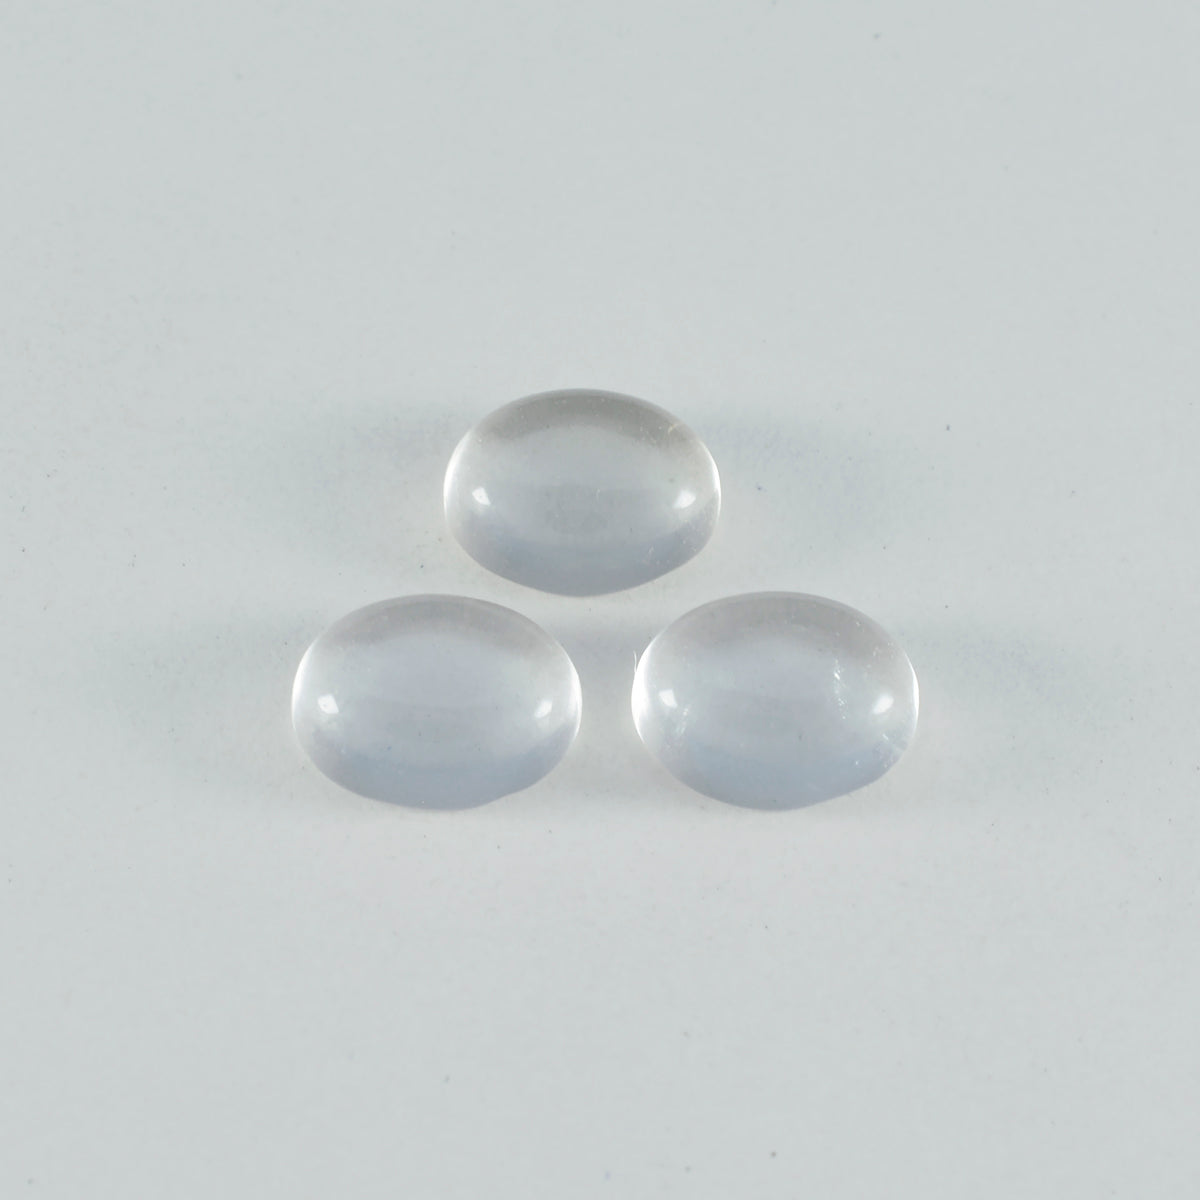 riyogems 1 шт. белый кристалл кварца кабошон 10x12 мм овальной формы драгоценный камень фантастического качества